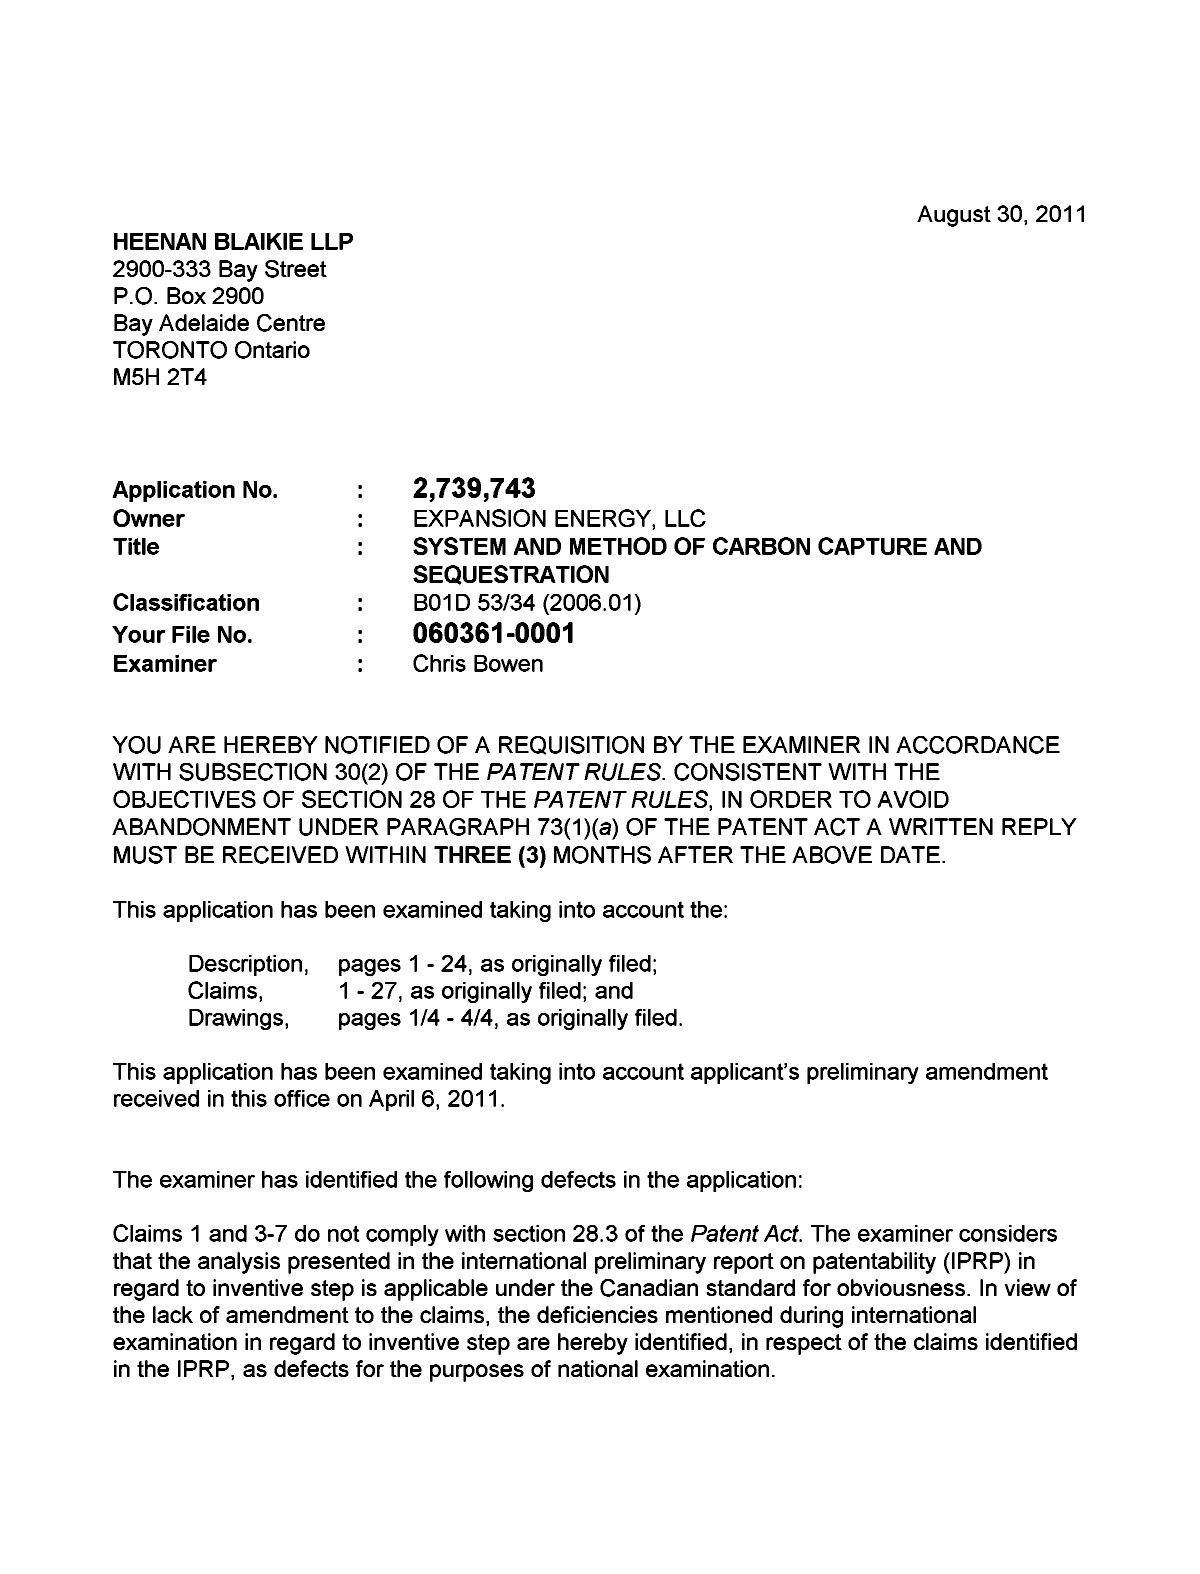 Document de brevet canadien 2739743. Poursuite-Amendment 20101230. Image 1 de 3